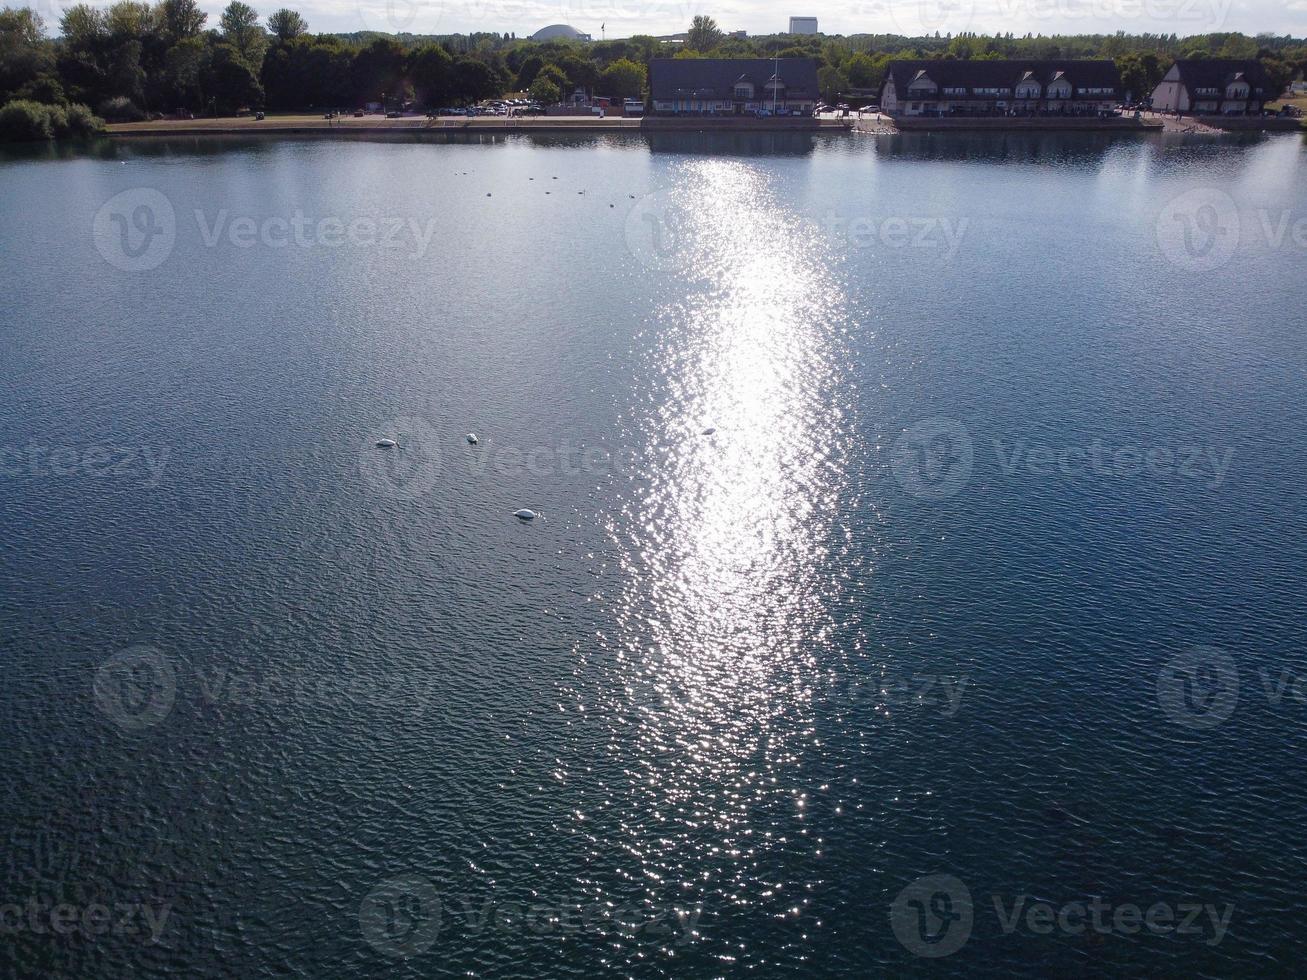 belle vue aérienne du magnifique lac de milton keynes angleterre uk photo